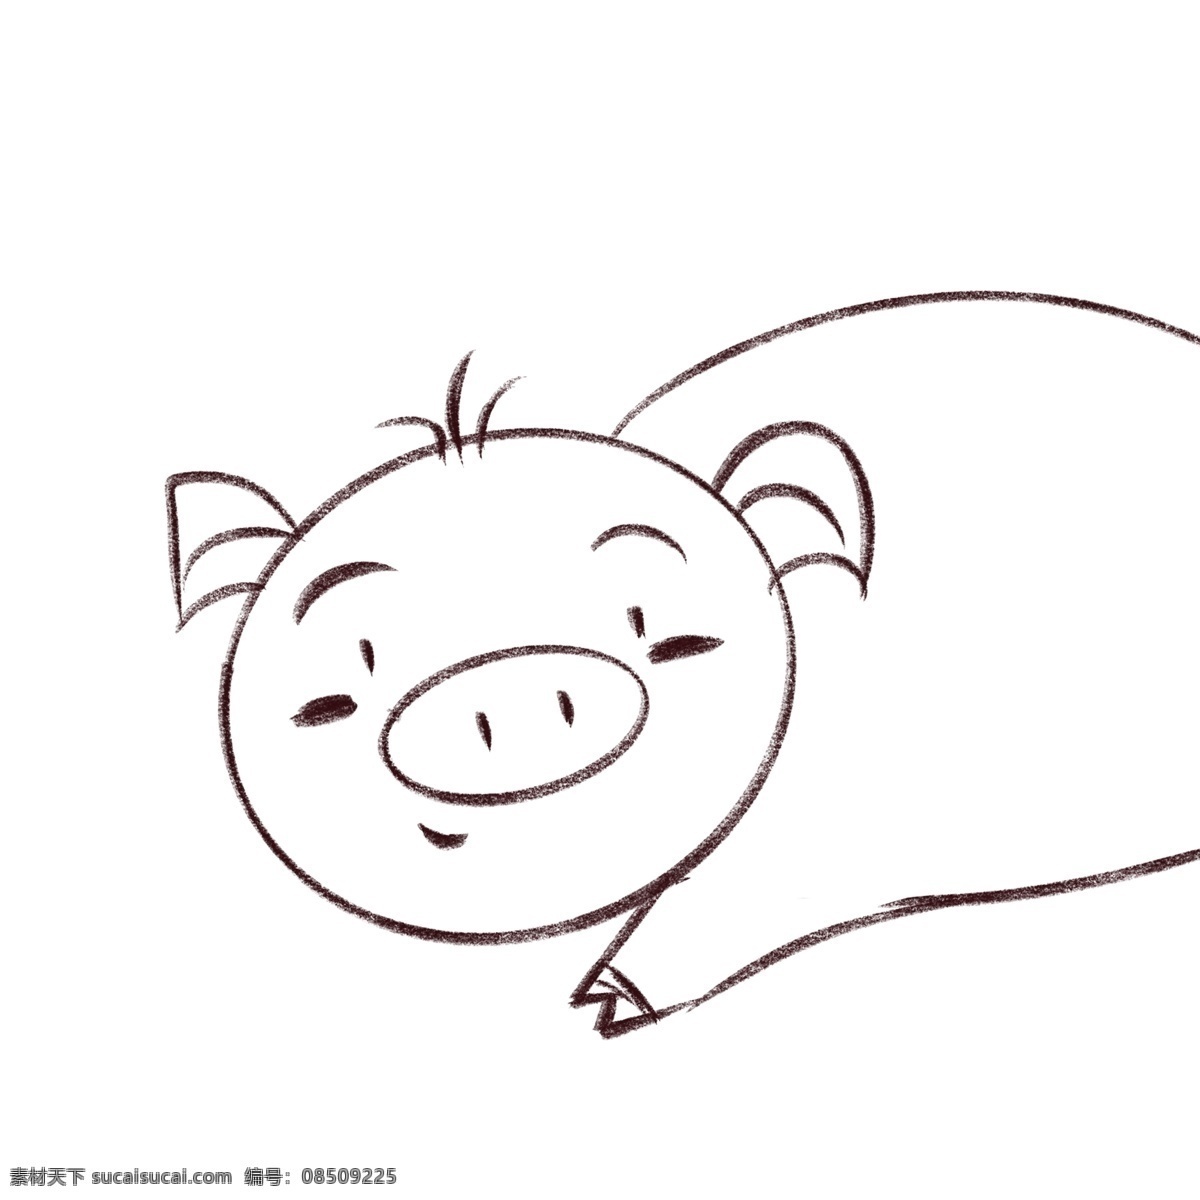 卡通 黑白 手绘 小 猪 彩色手绘动物 萌萌哒小动物 可爱小动物 动物小猪 卡通手绘 小清新